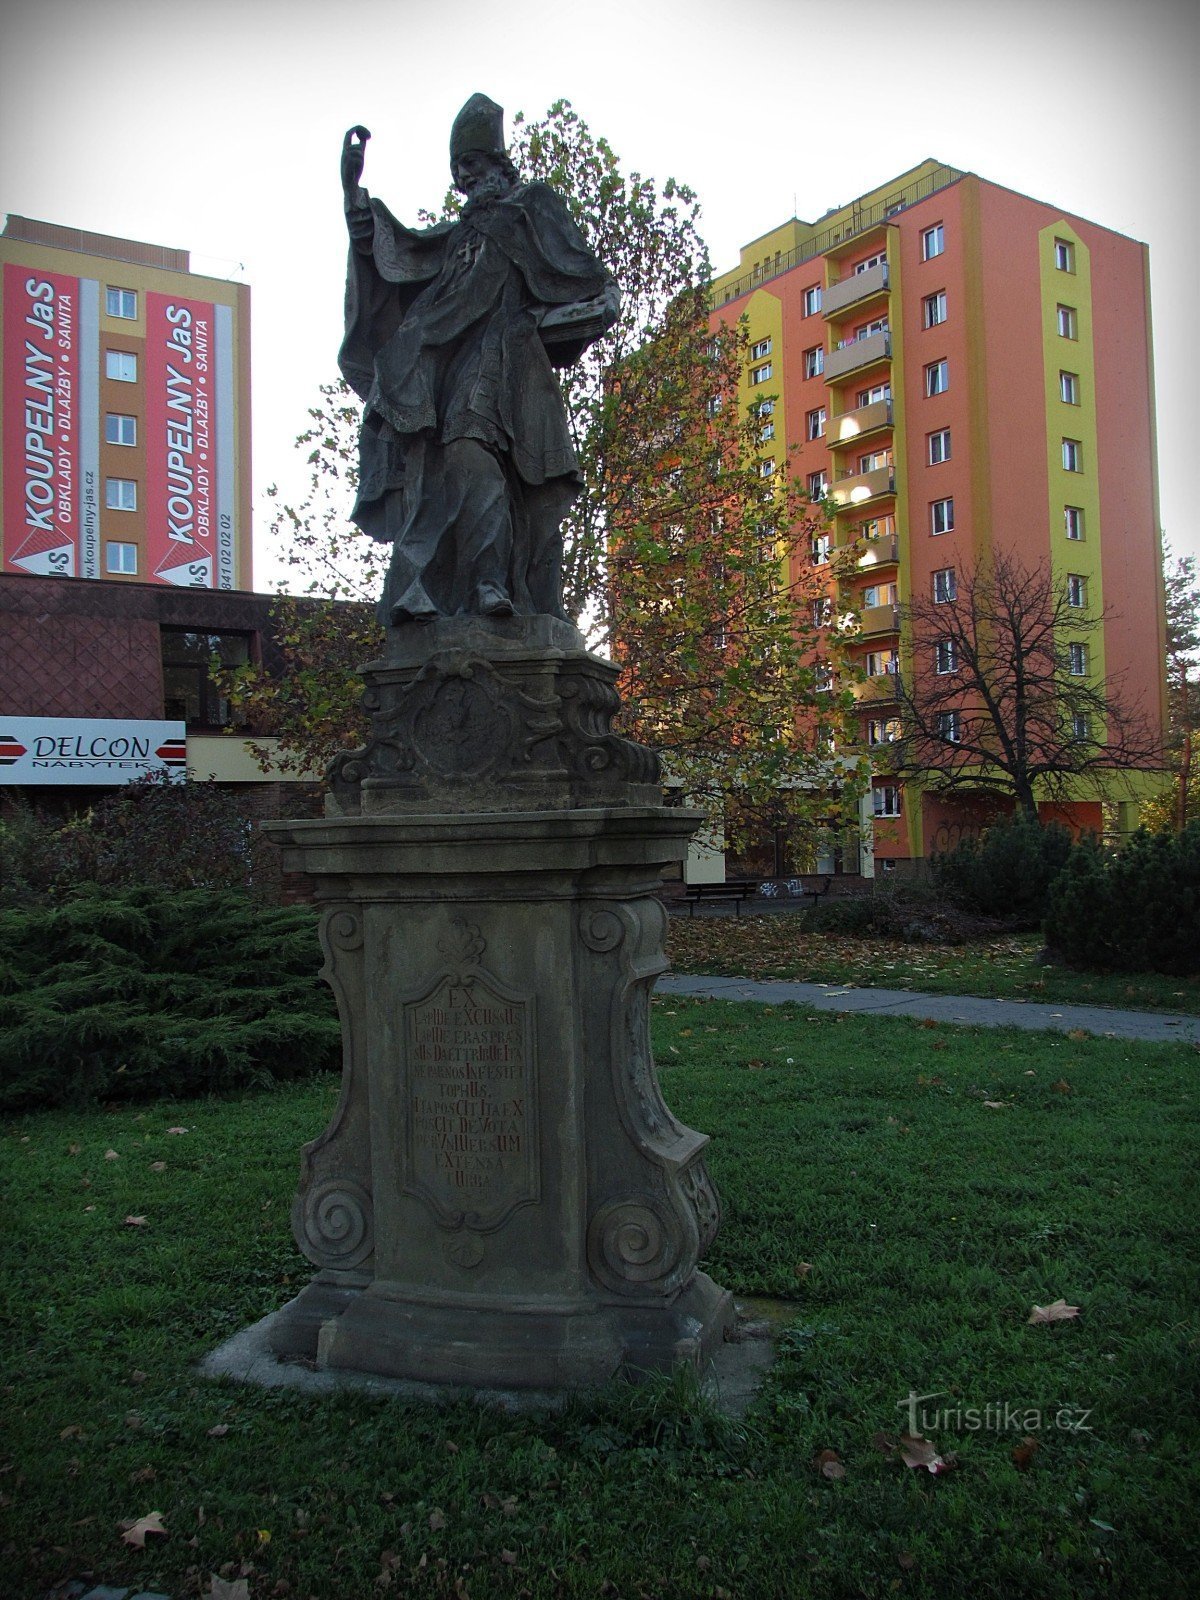 Saint Liborius in Valašské Meziříčí